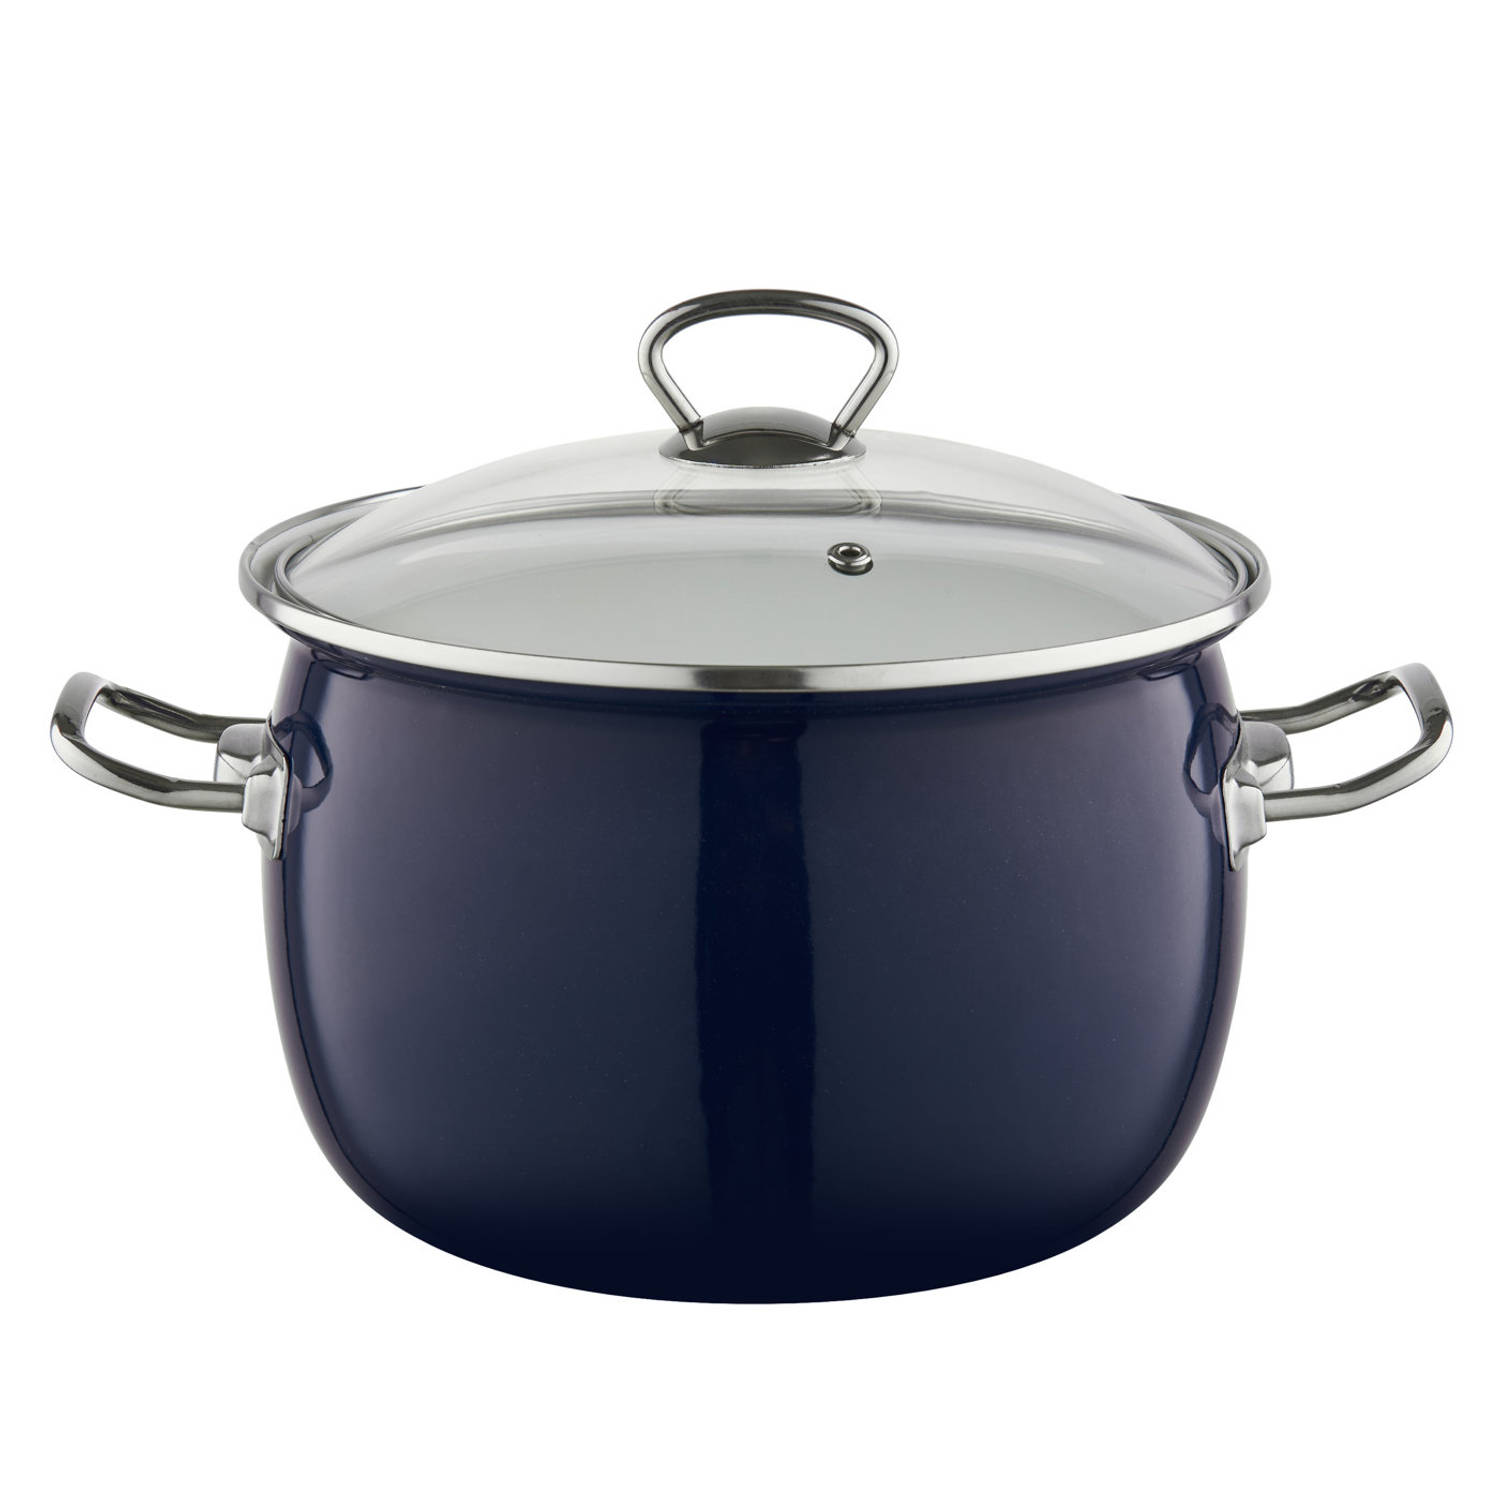 Emalia Berry 24 cm 5L retro geëmailleerde exclusieve kookpan met glazen deksel marineblauw - geschikt voor alle warmtebronnen - kookpannenset - emaille - limited edition - blauw